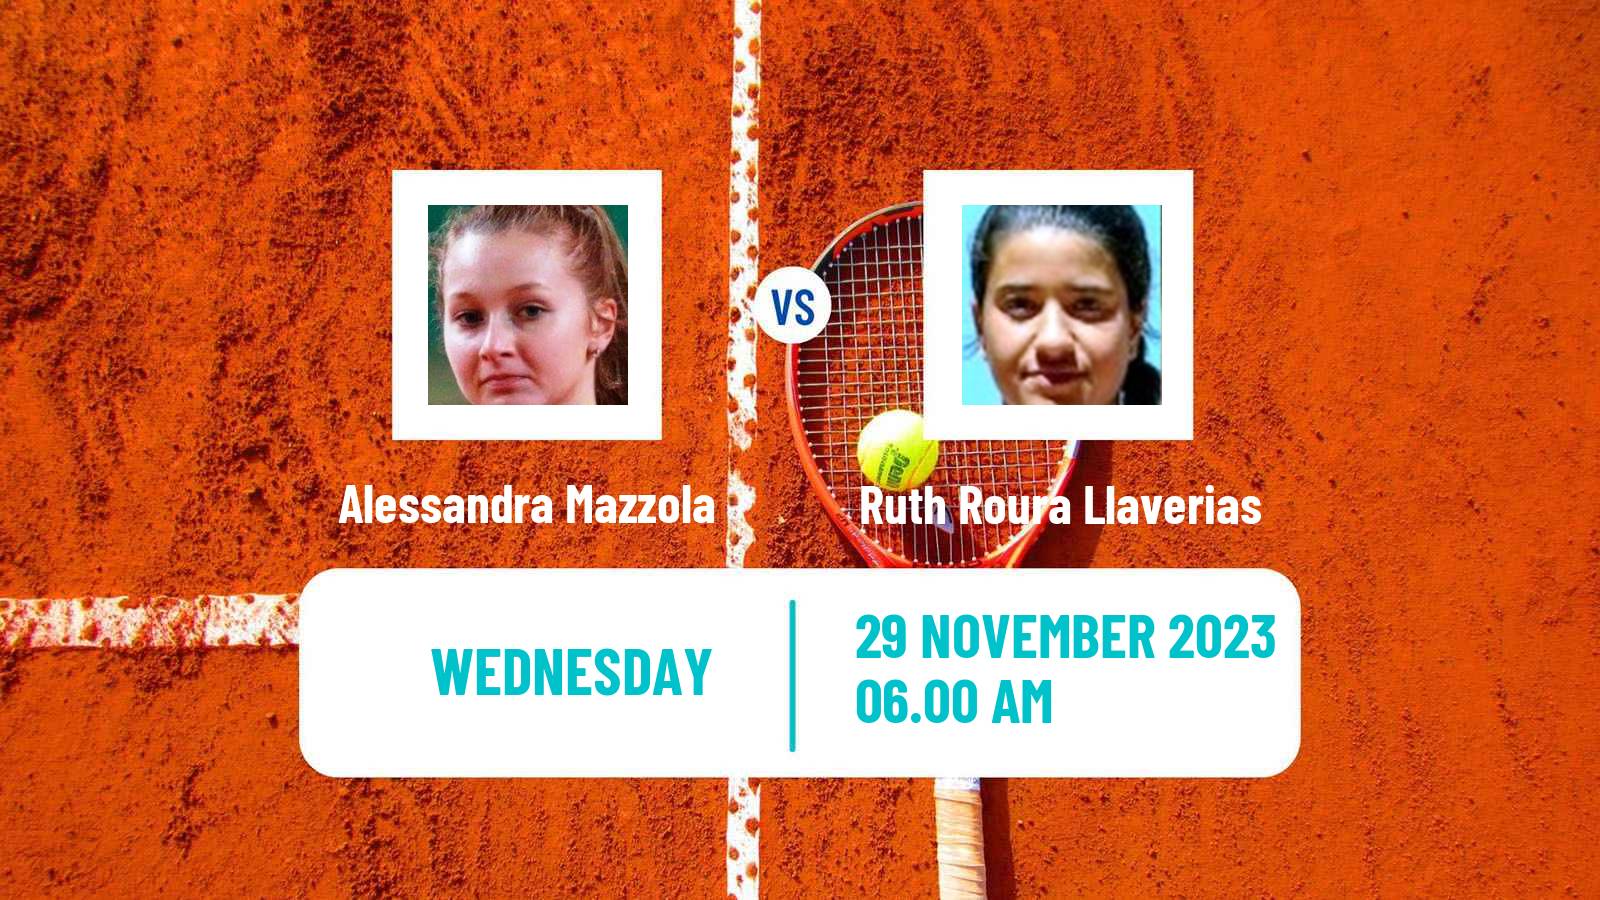 Tennis ITF W15 Valencia Women Alessandra Mazzola - Ruth Roura Llaverias